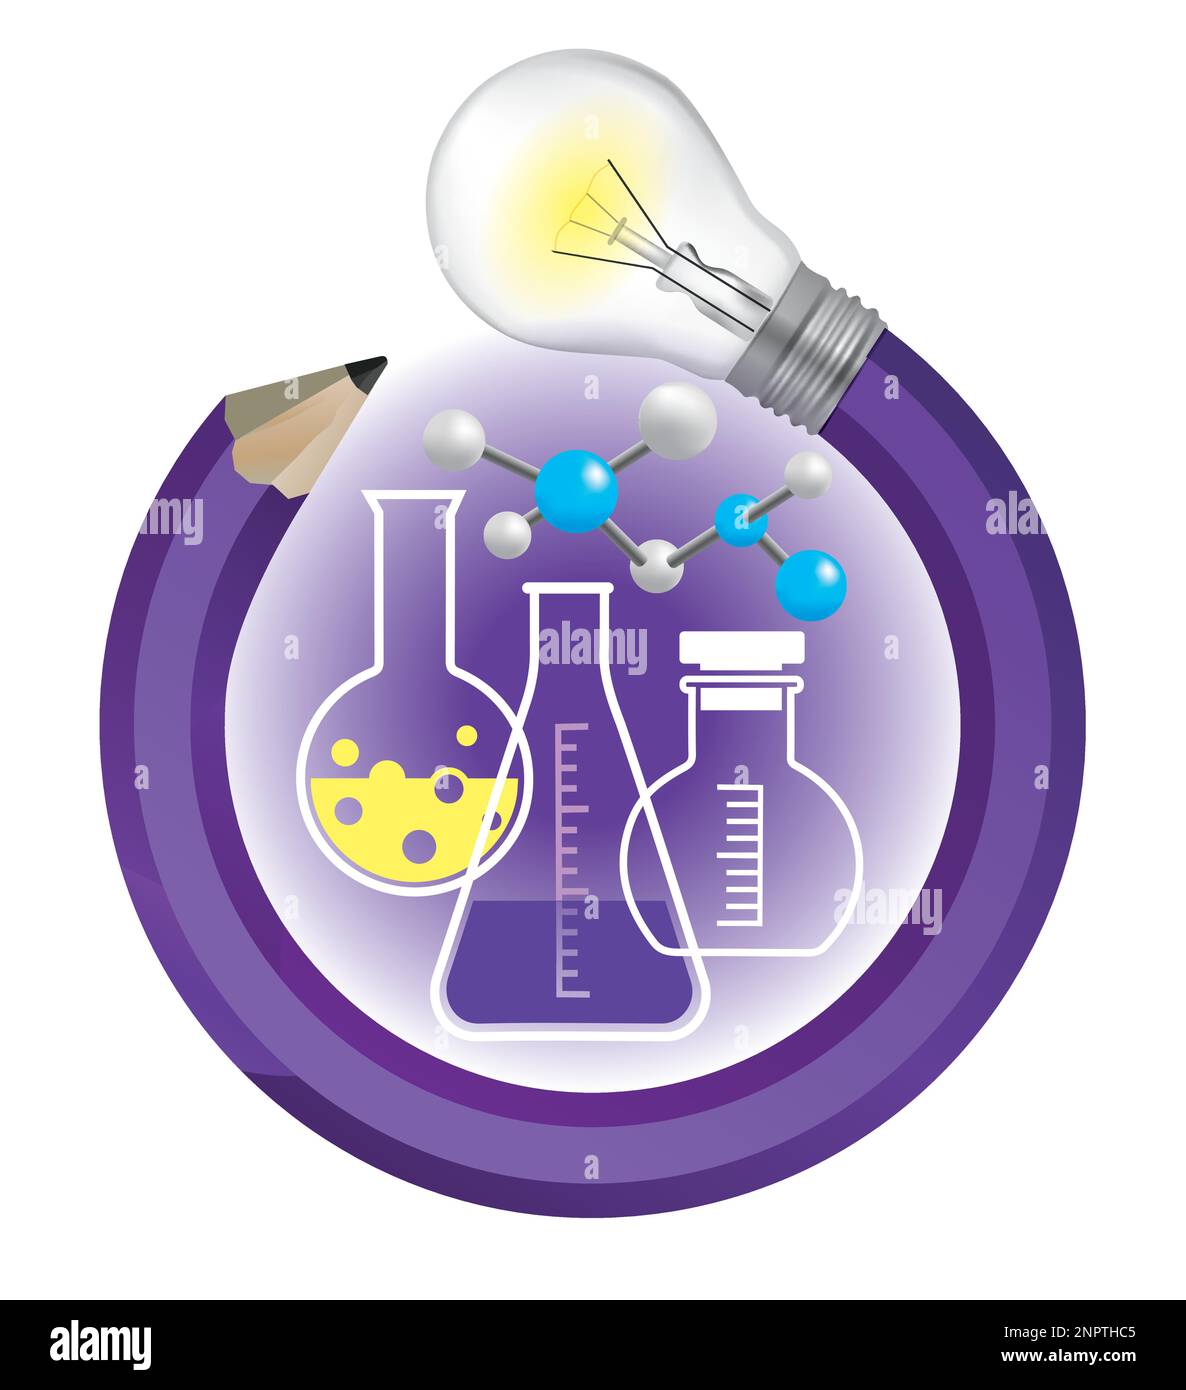 Spielerische Chemie, kreatives Bleistiftkonzept. Illustration eines bunten gedrehten Bleistifts mit Glühbirne und Chemiesymbolen, Laborglaswaren. Stock Vektor